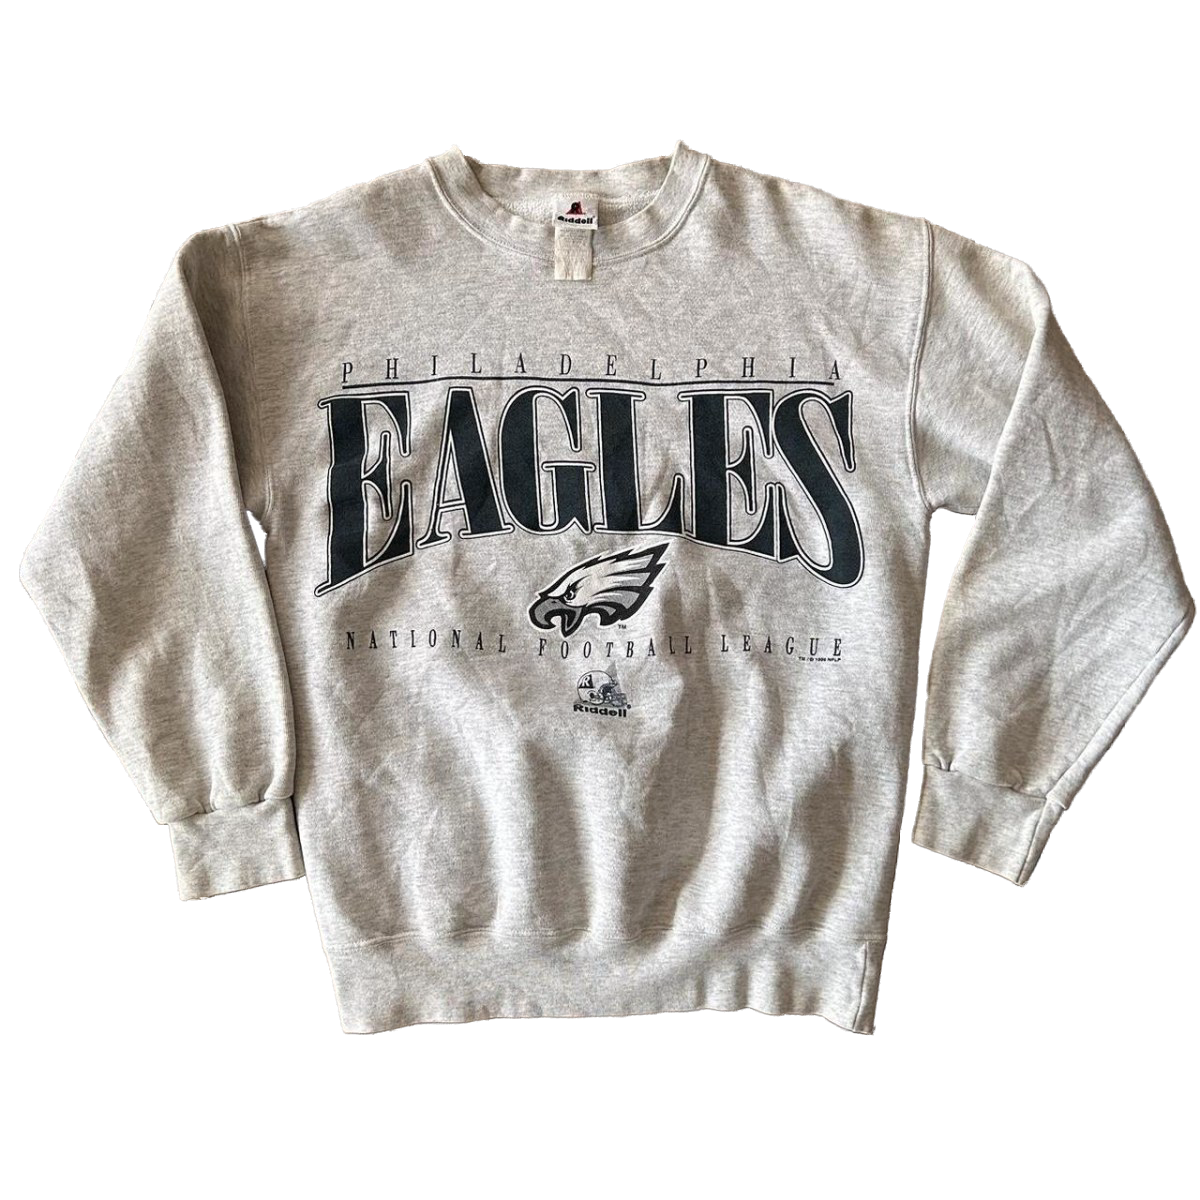 Vintage 1990s Philadelphia Eagles Crewneck Sweatshirt